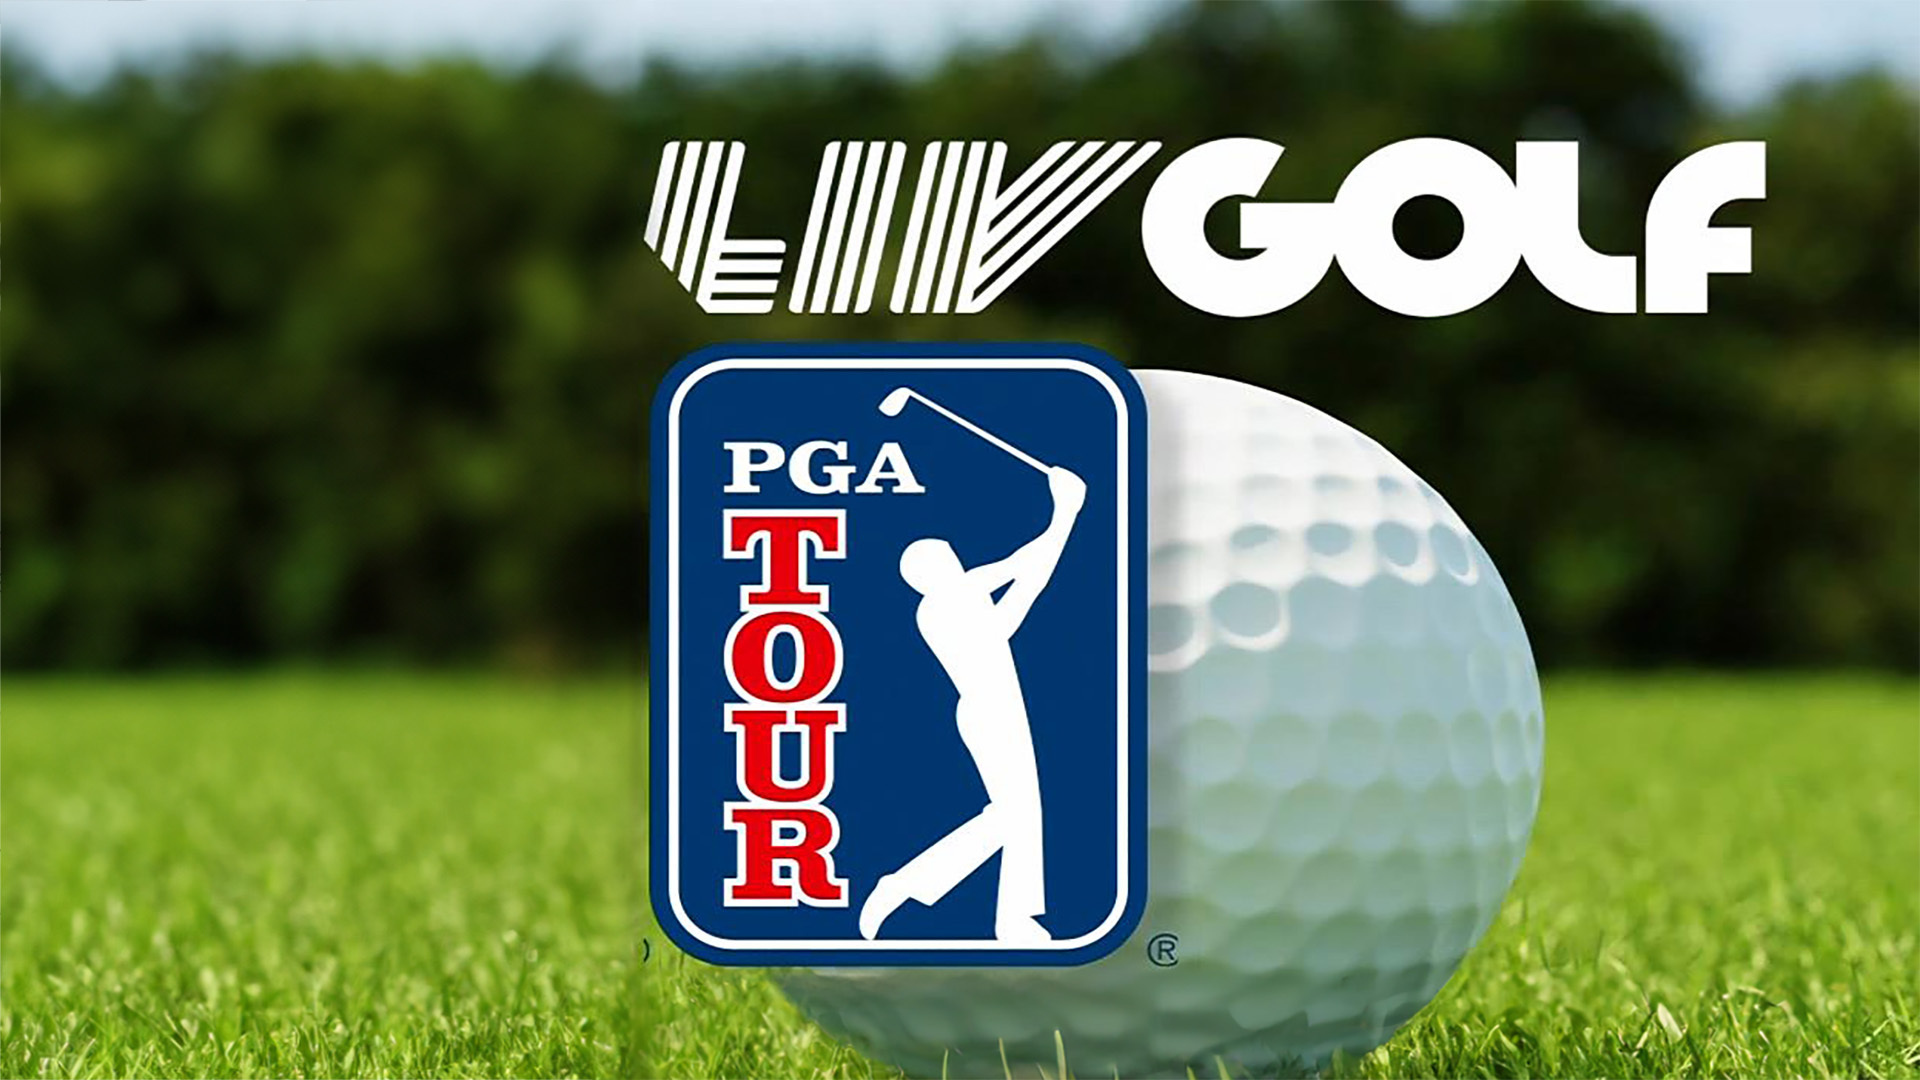 Watch CBS Evening News PGA officials grilled over LIV Golf merger